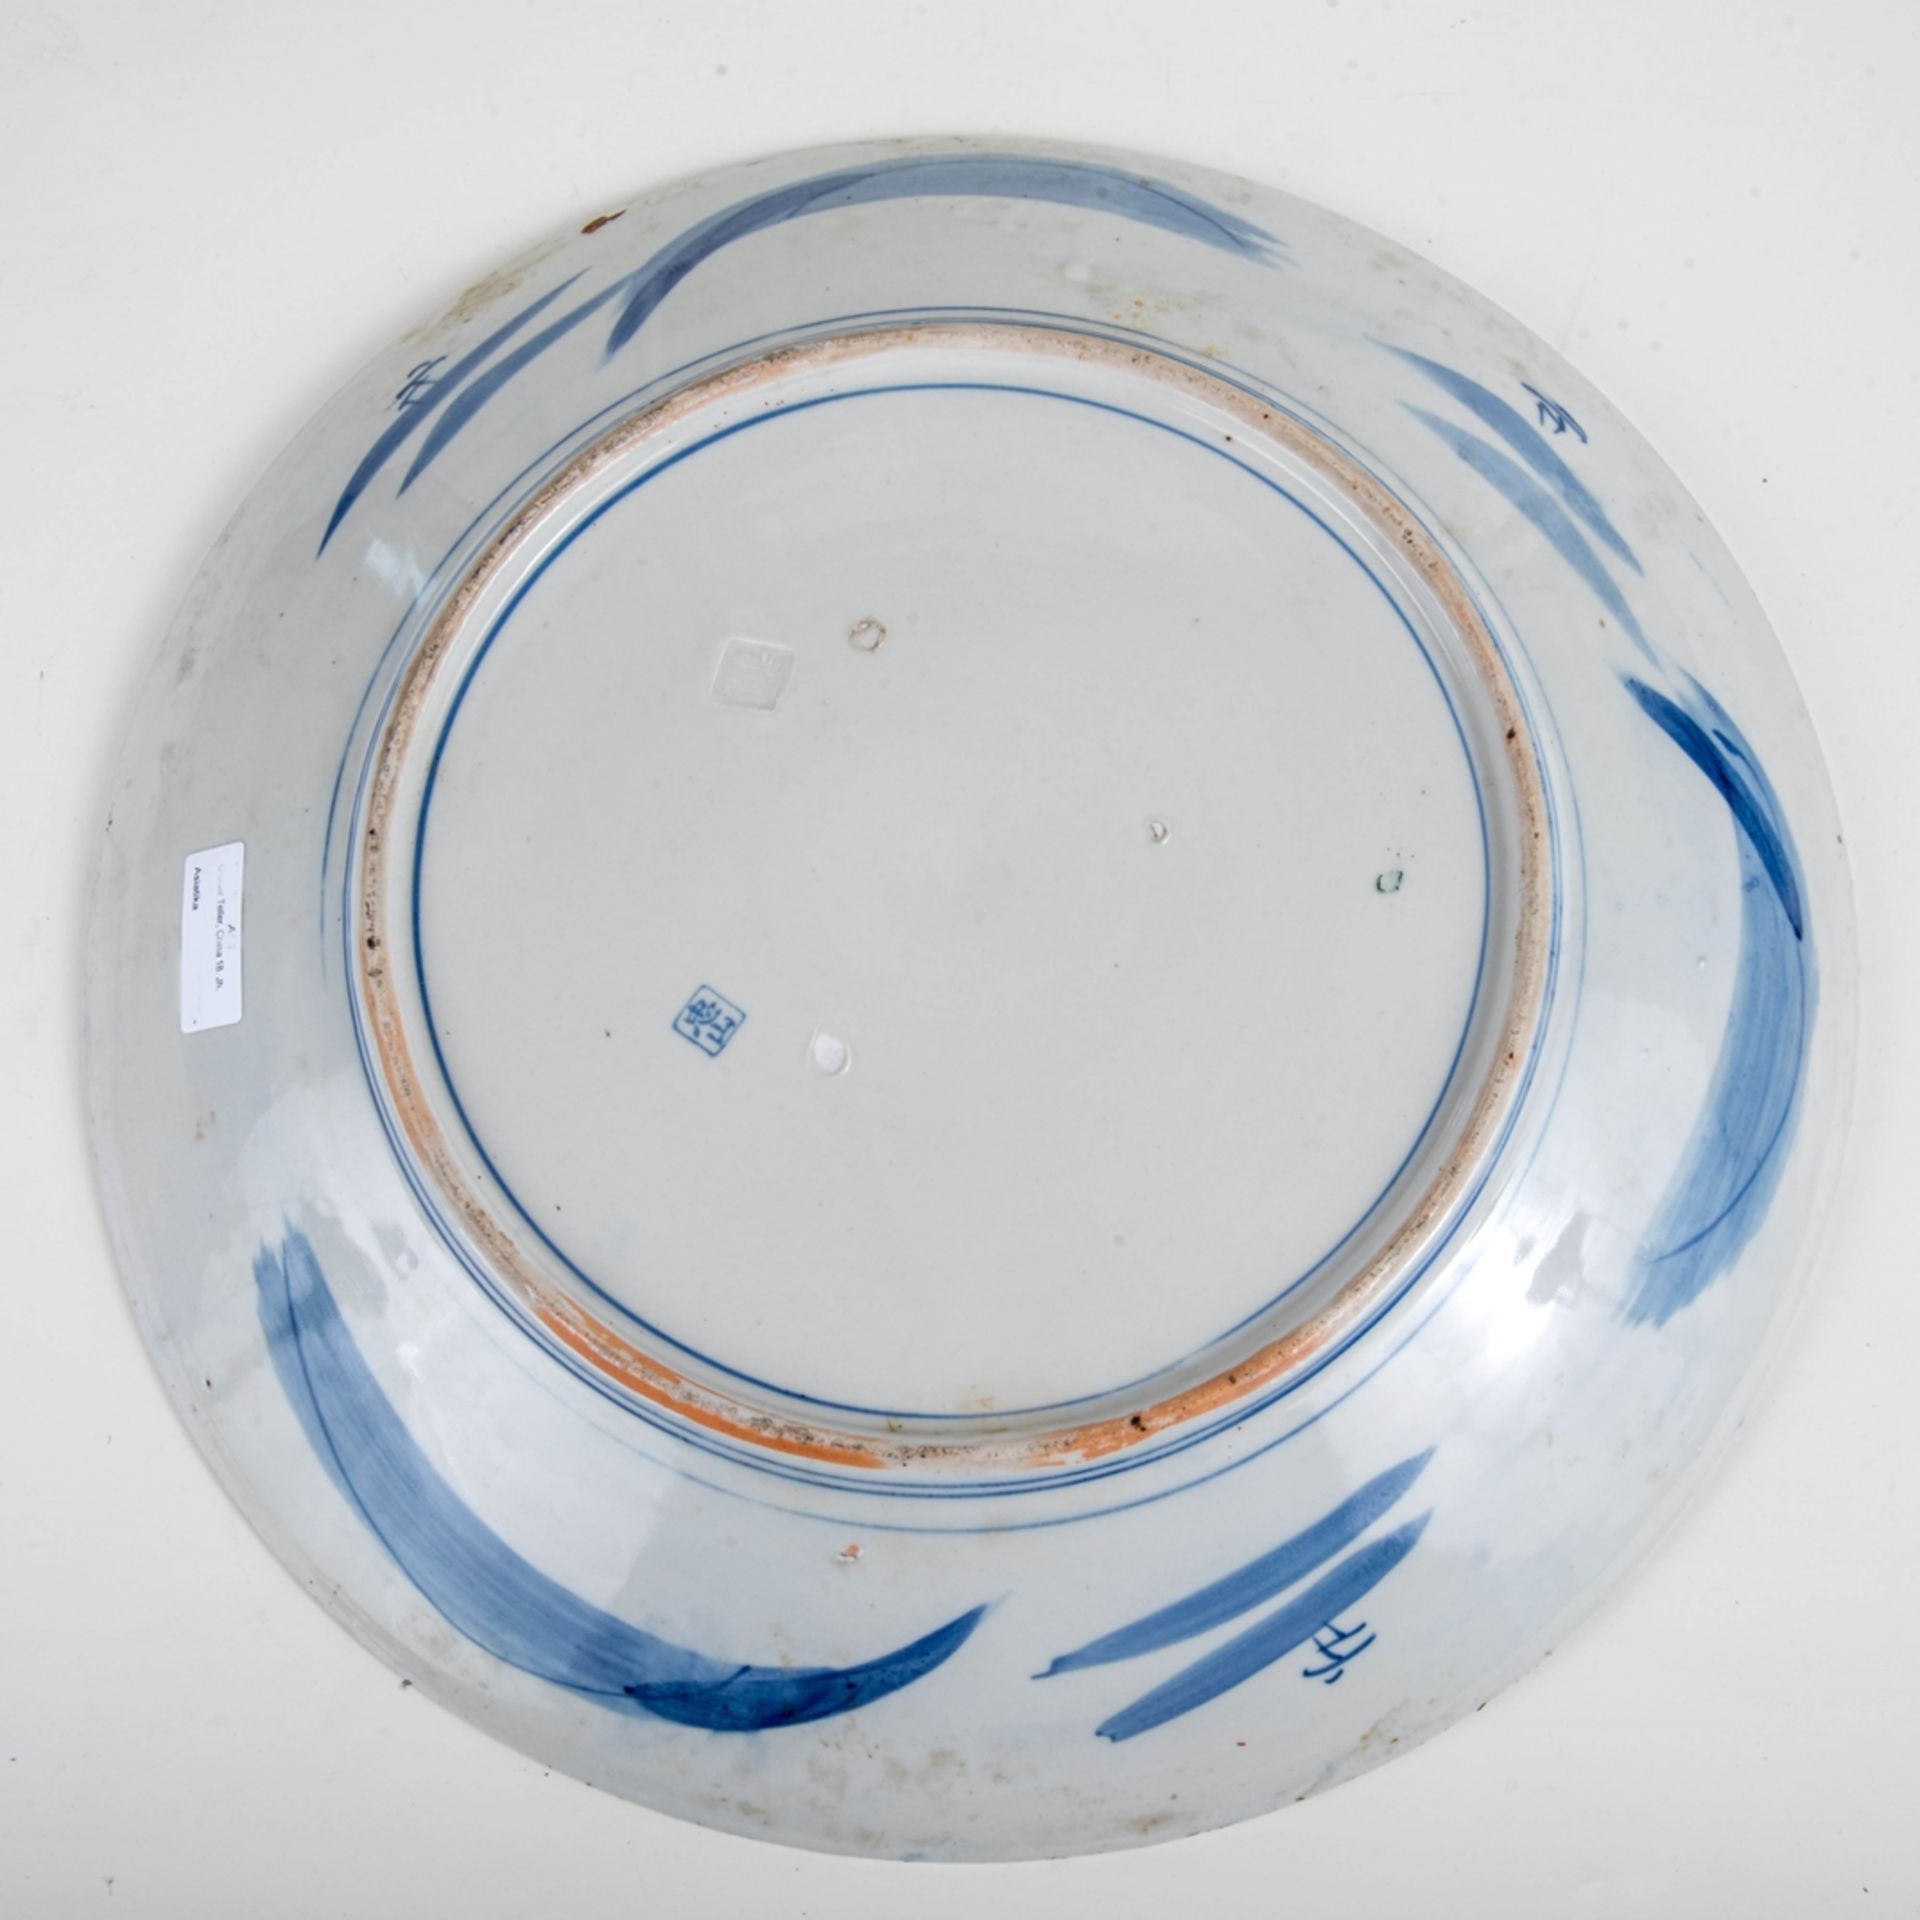 Großer Teller, China 18. Jh.Porzellan blau bemalt. Unterseite mit Pressmarke u. blauer Marke. - Bild 2 aus 2